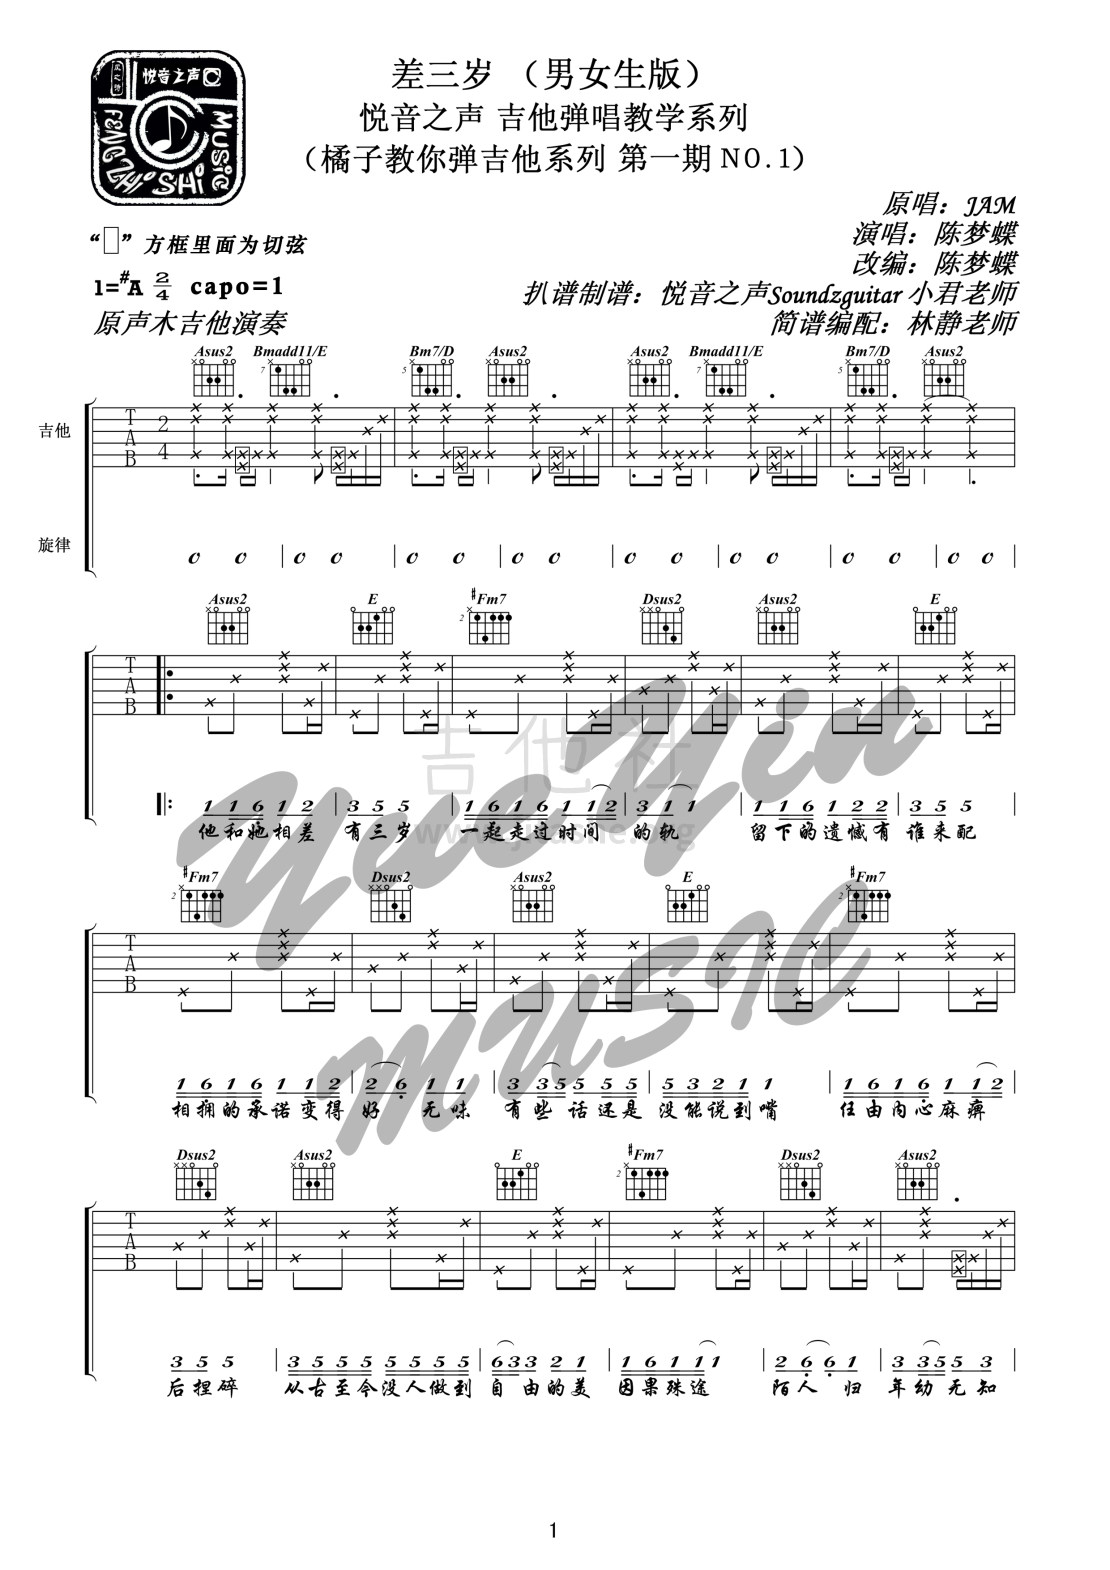 打印:差三岁（悦音之声音乐工作室吉他弹唱教学  橘子教你弹吉他系列 第一期NO.1）吉他谱_Jam(阿敬)_1.jpg